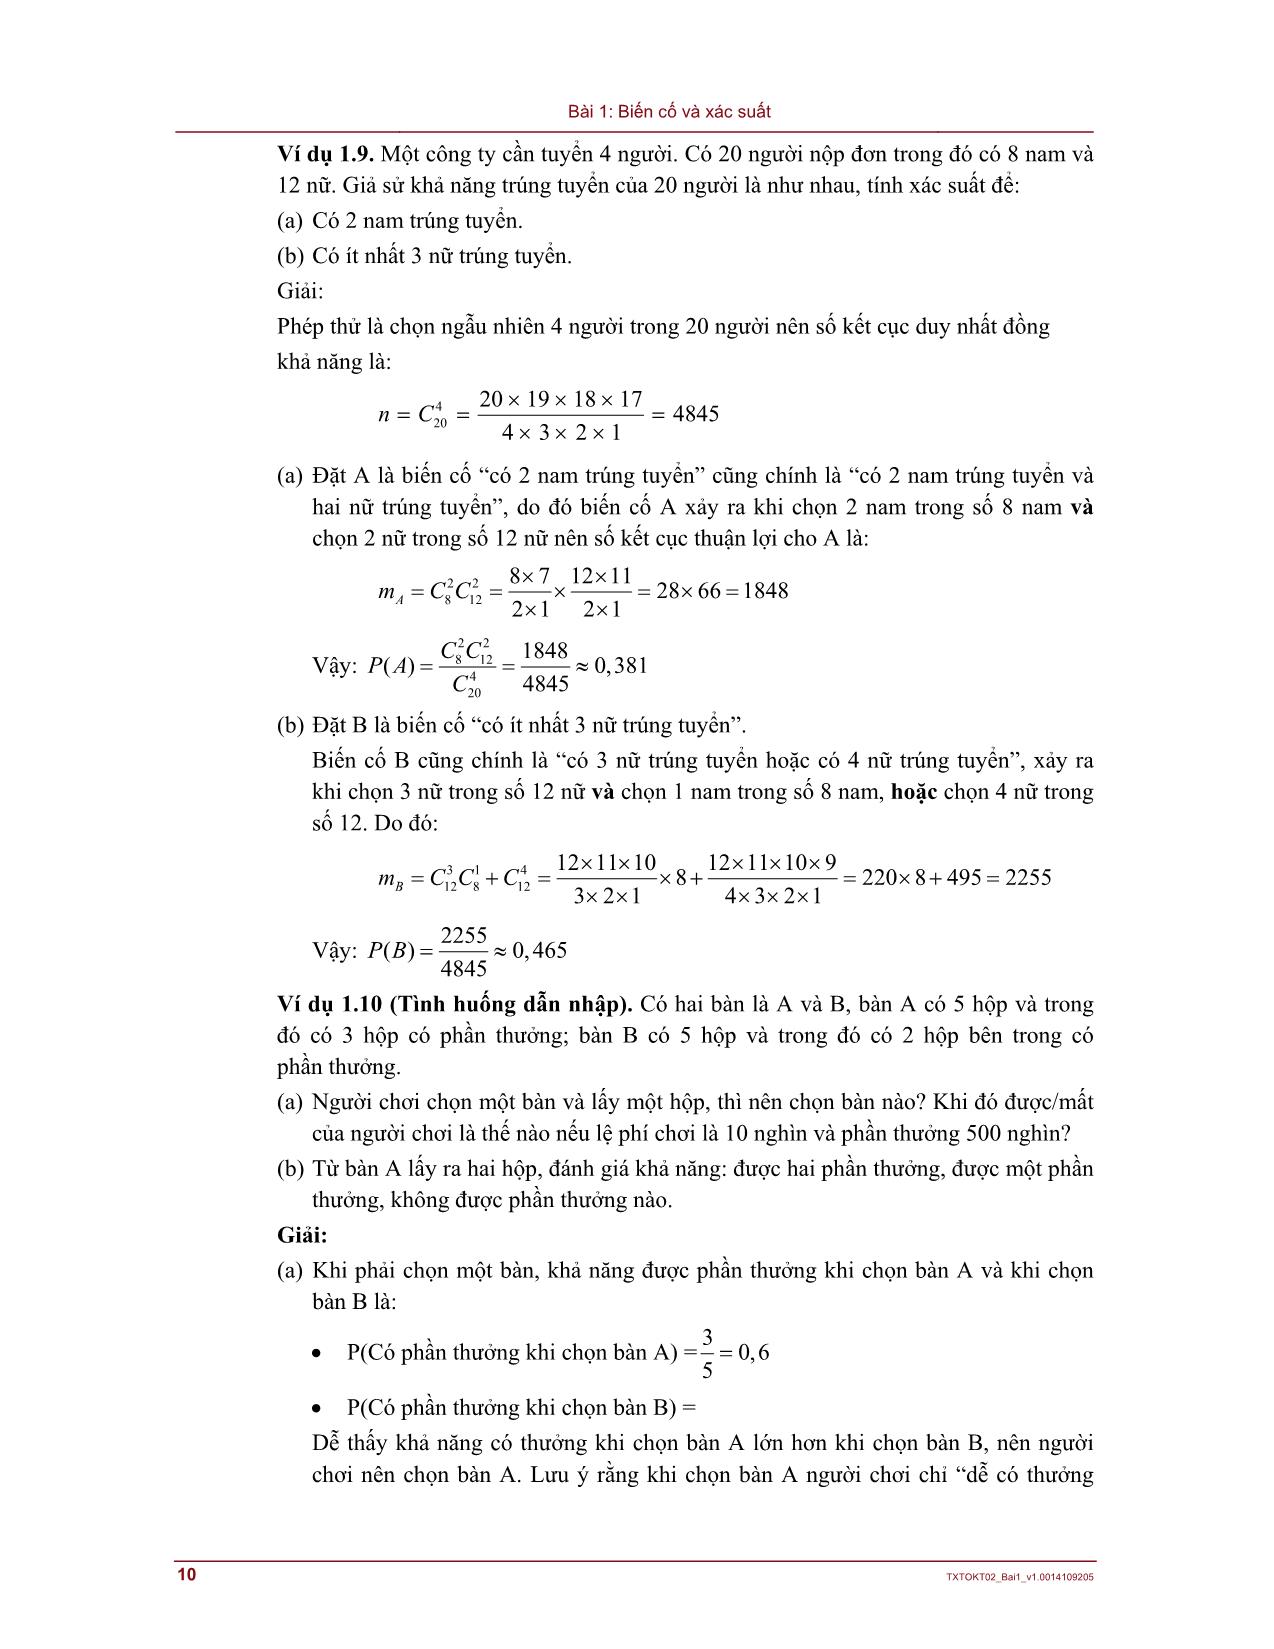 Bài giảng Lý thuyết xác suất và thống kê - Bài 1: Biến cố và xác suất trang 10